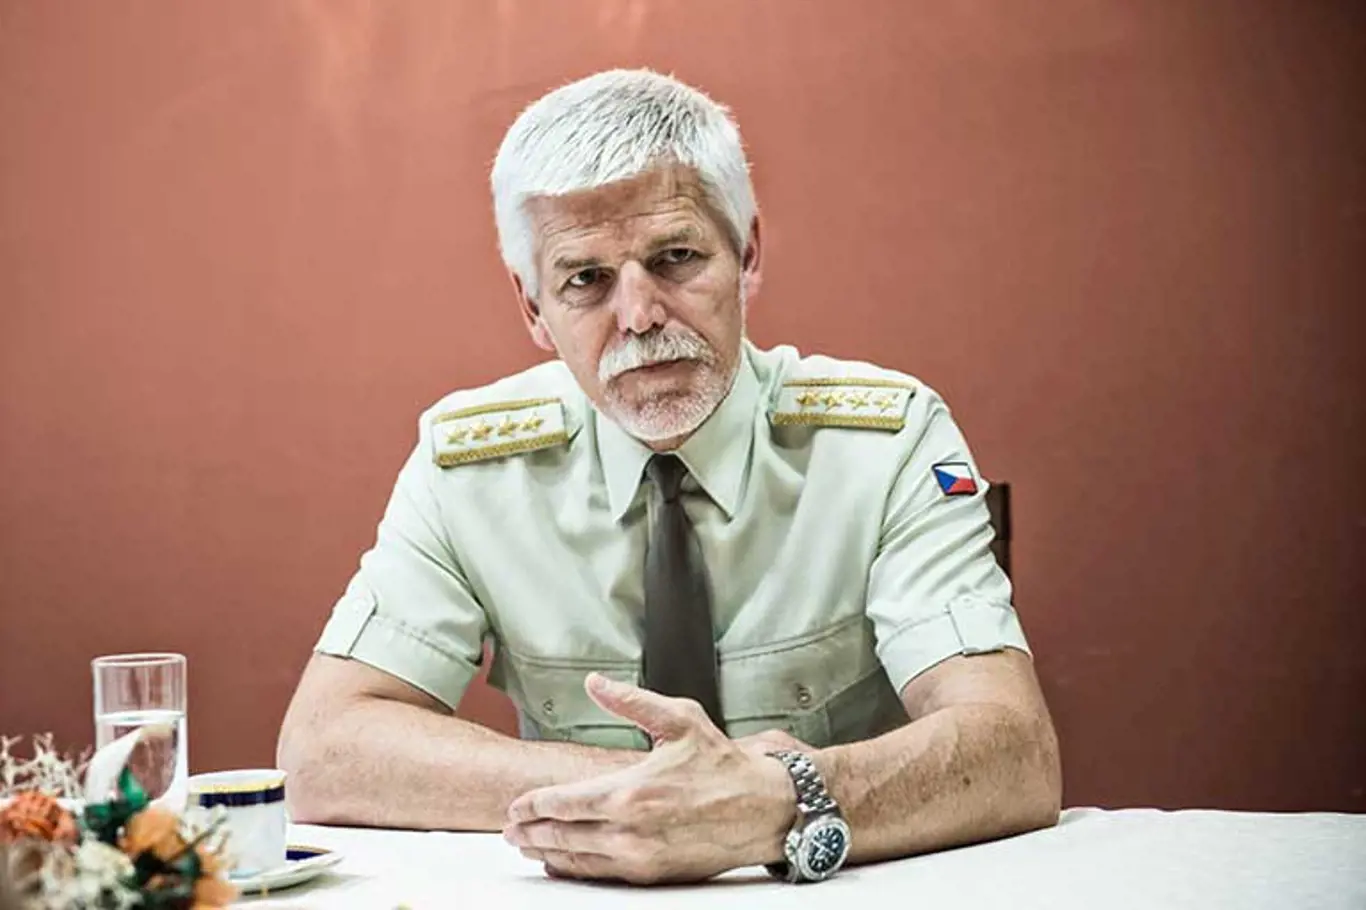 Armádní generál Petr Pavel, v současnosti muž číslo 2 v NATO